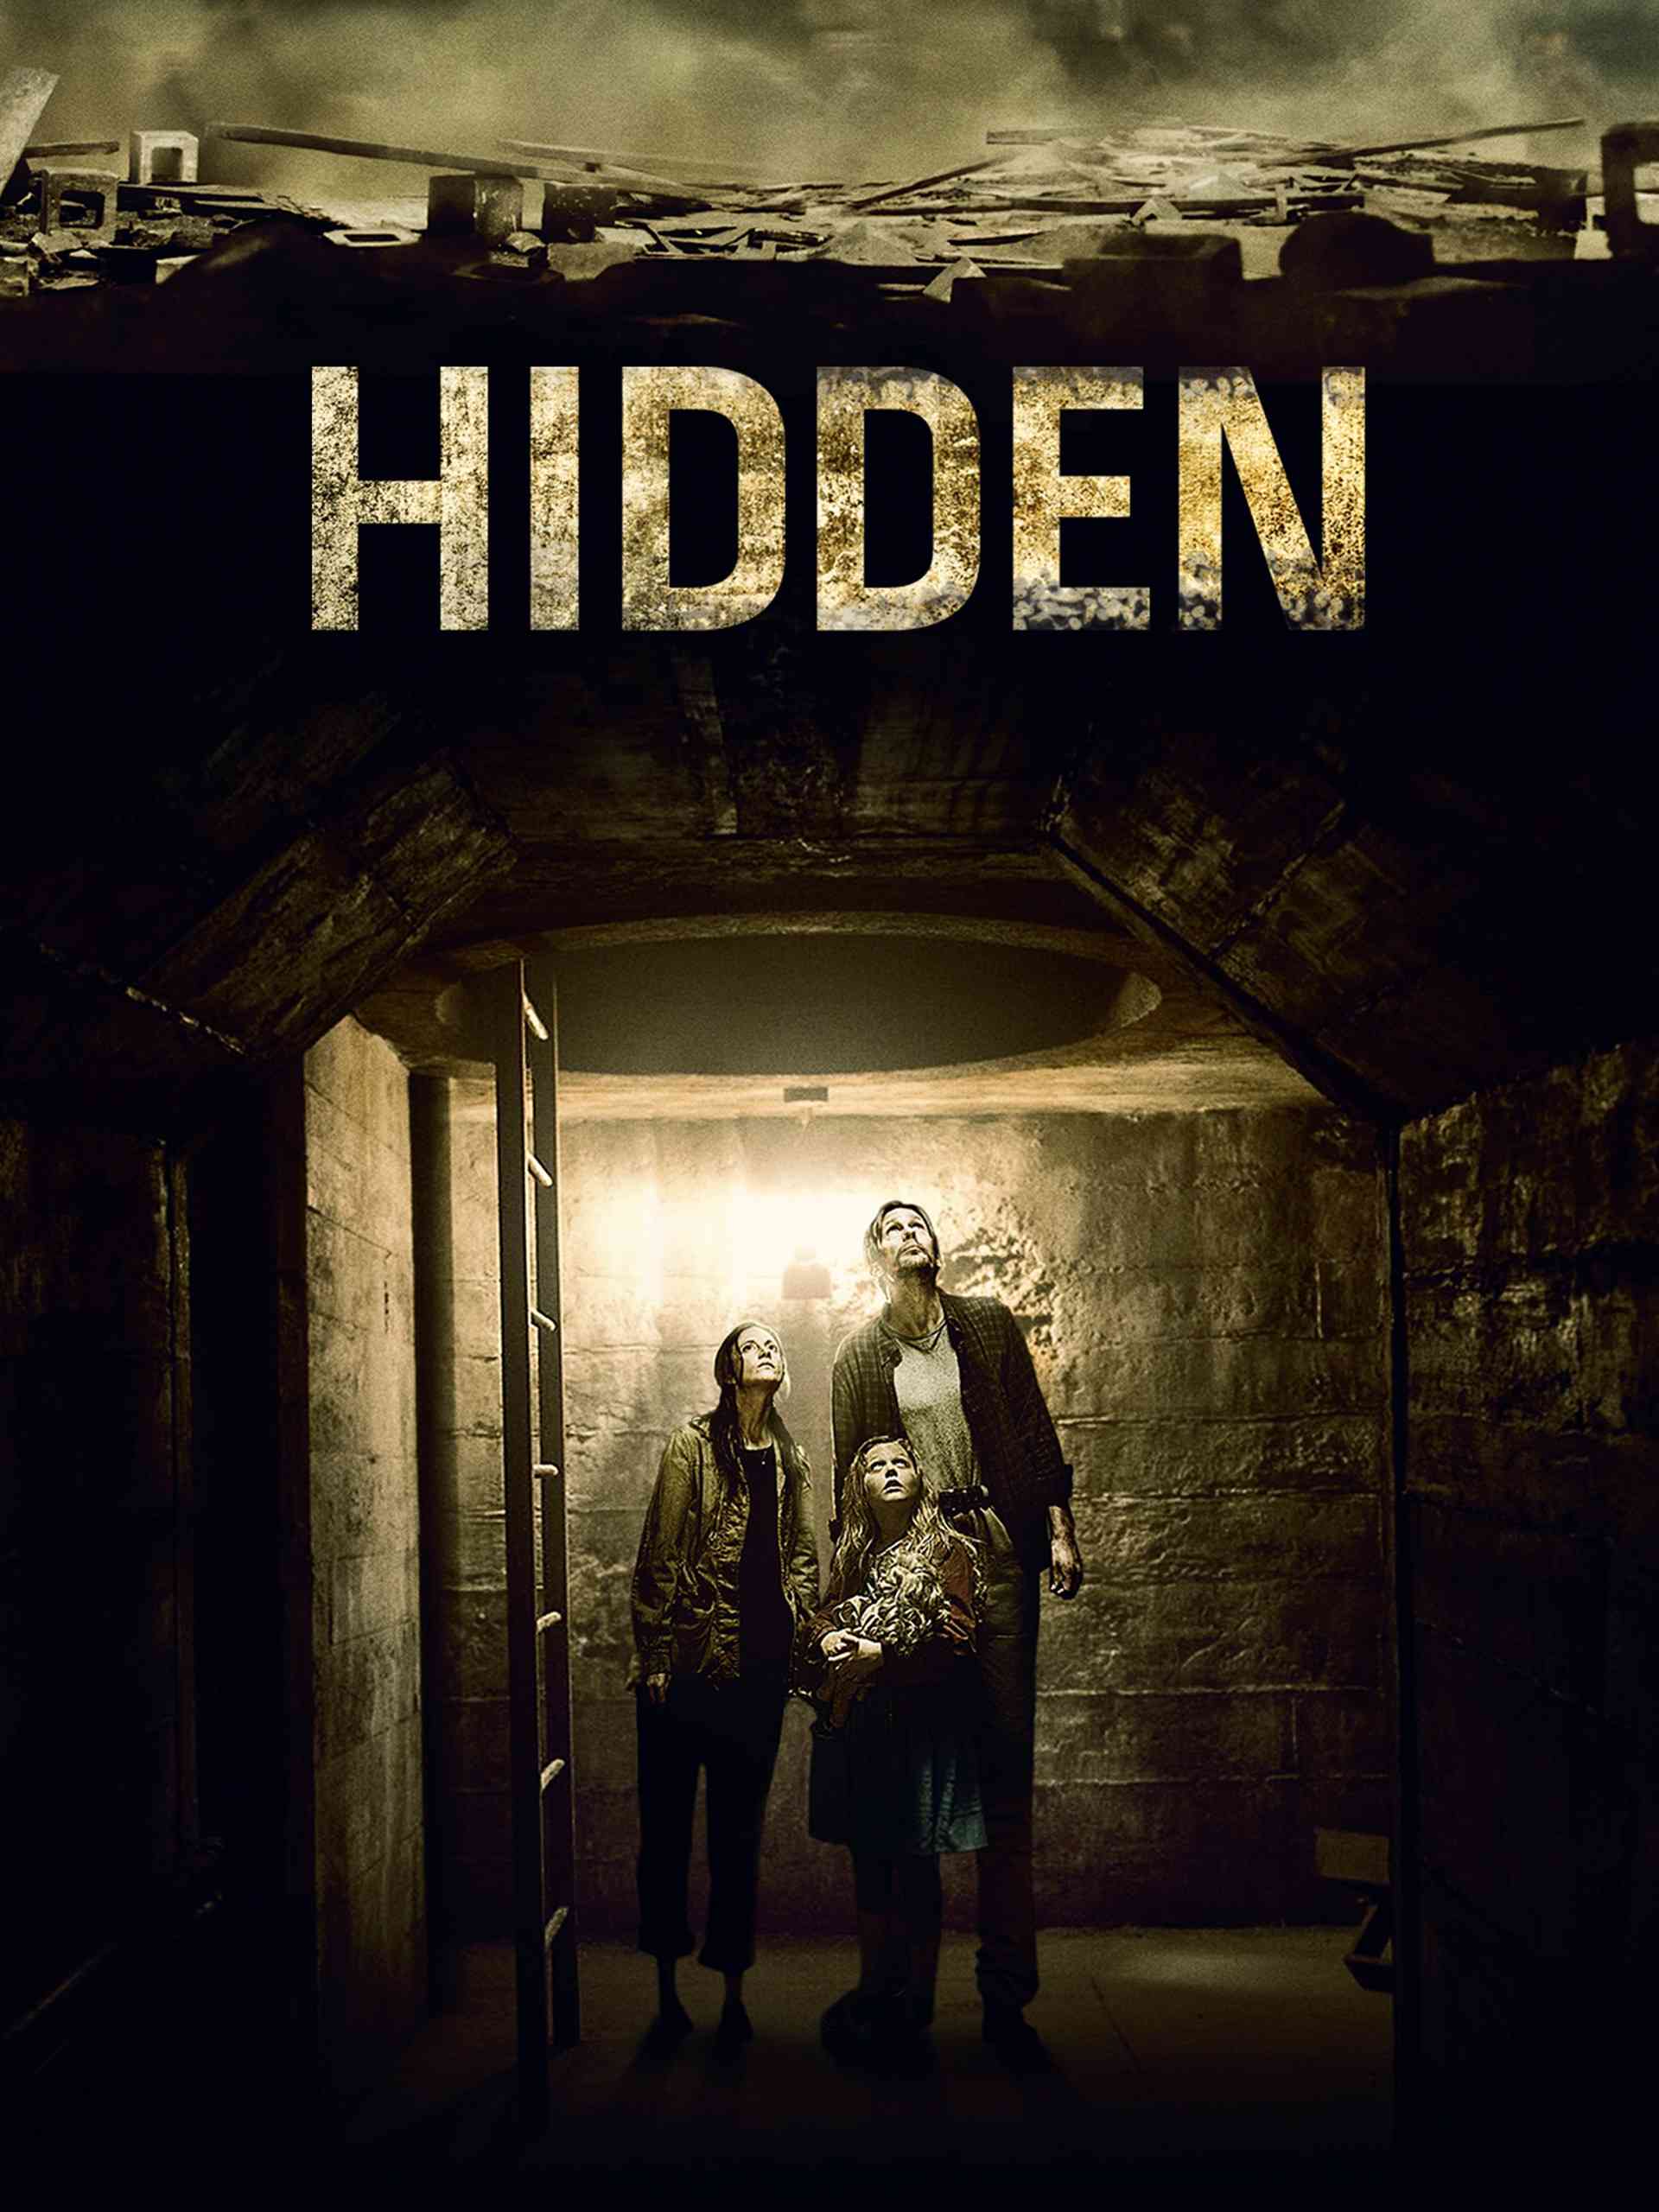 FULL MOVIE: Hidden (2015) [Horror]